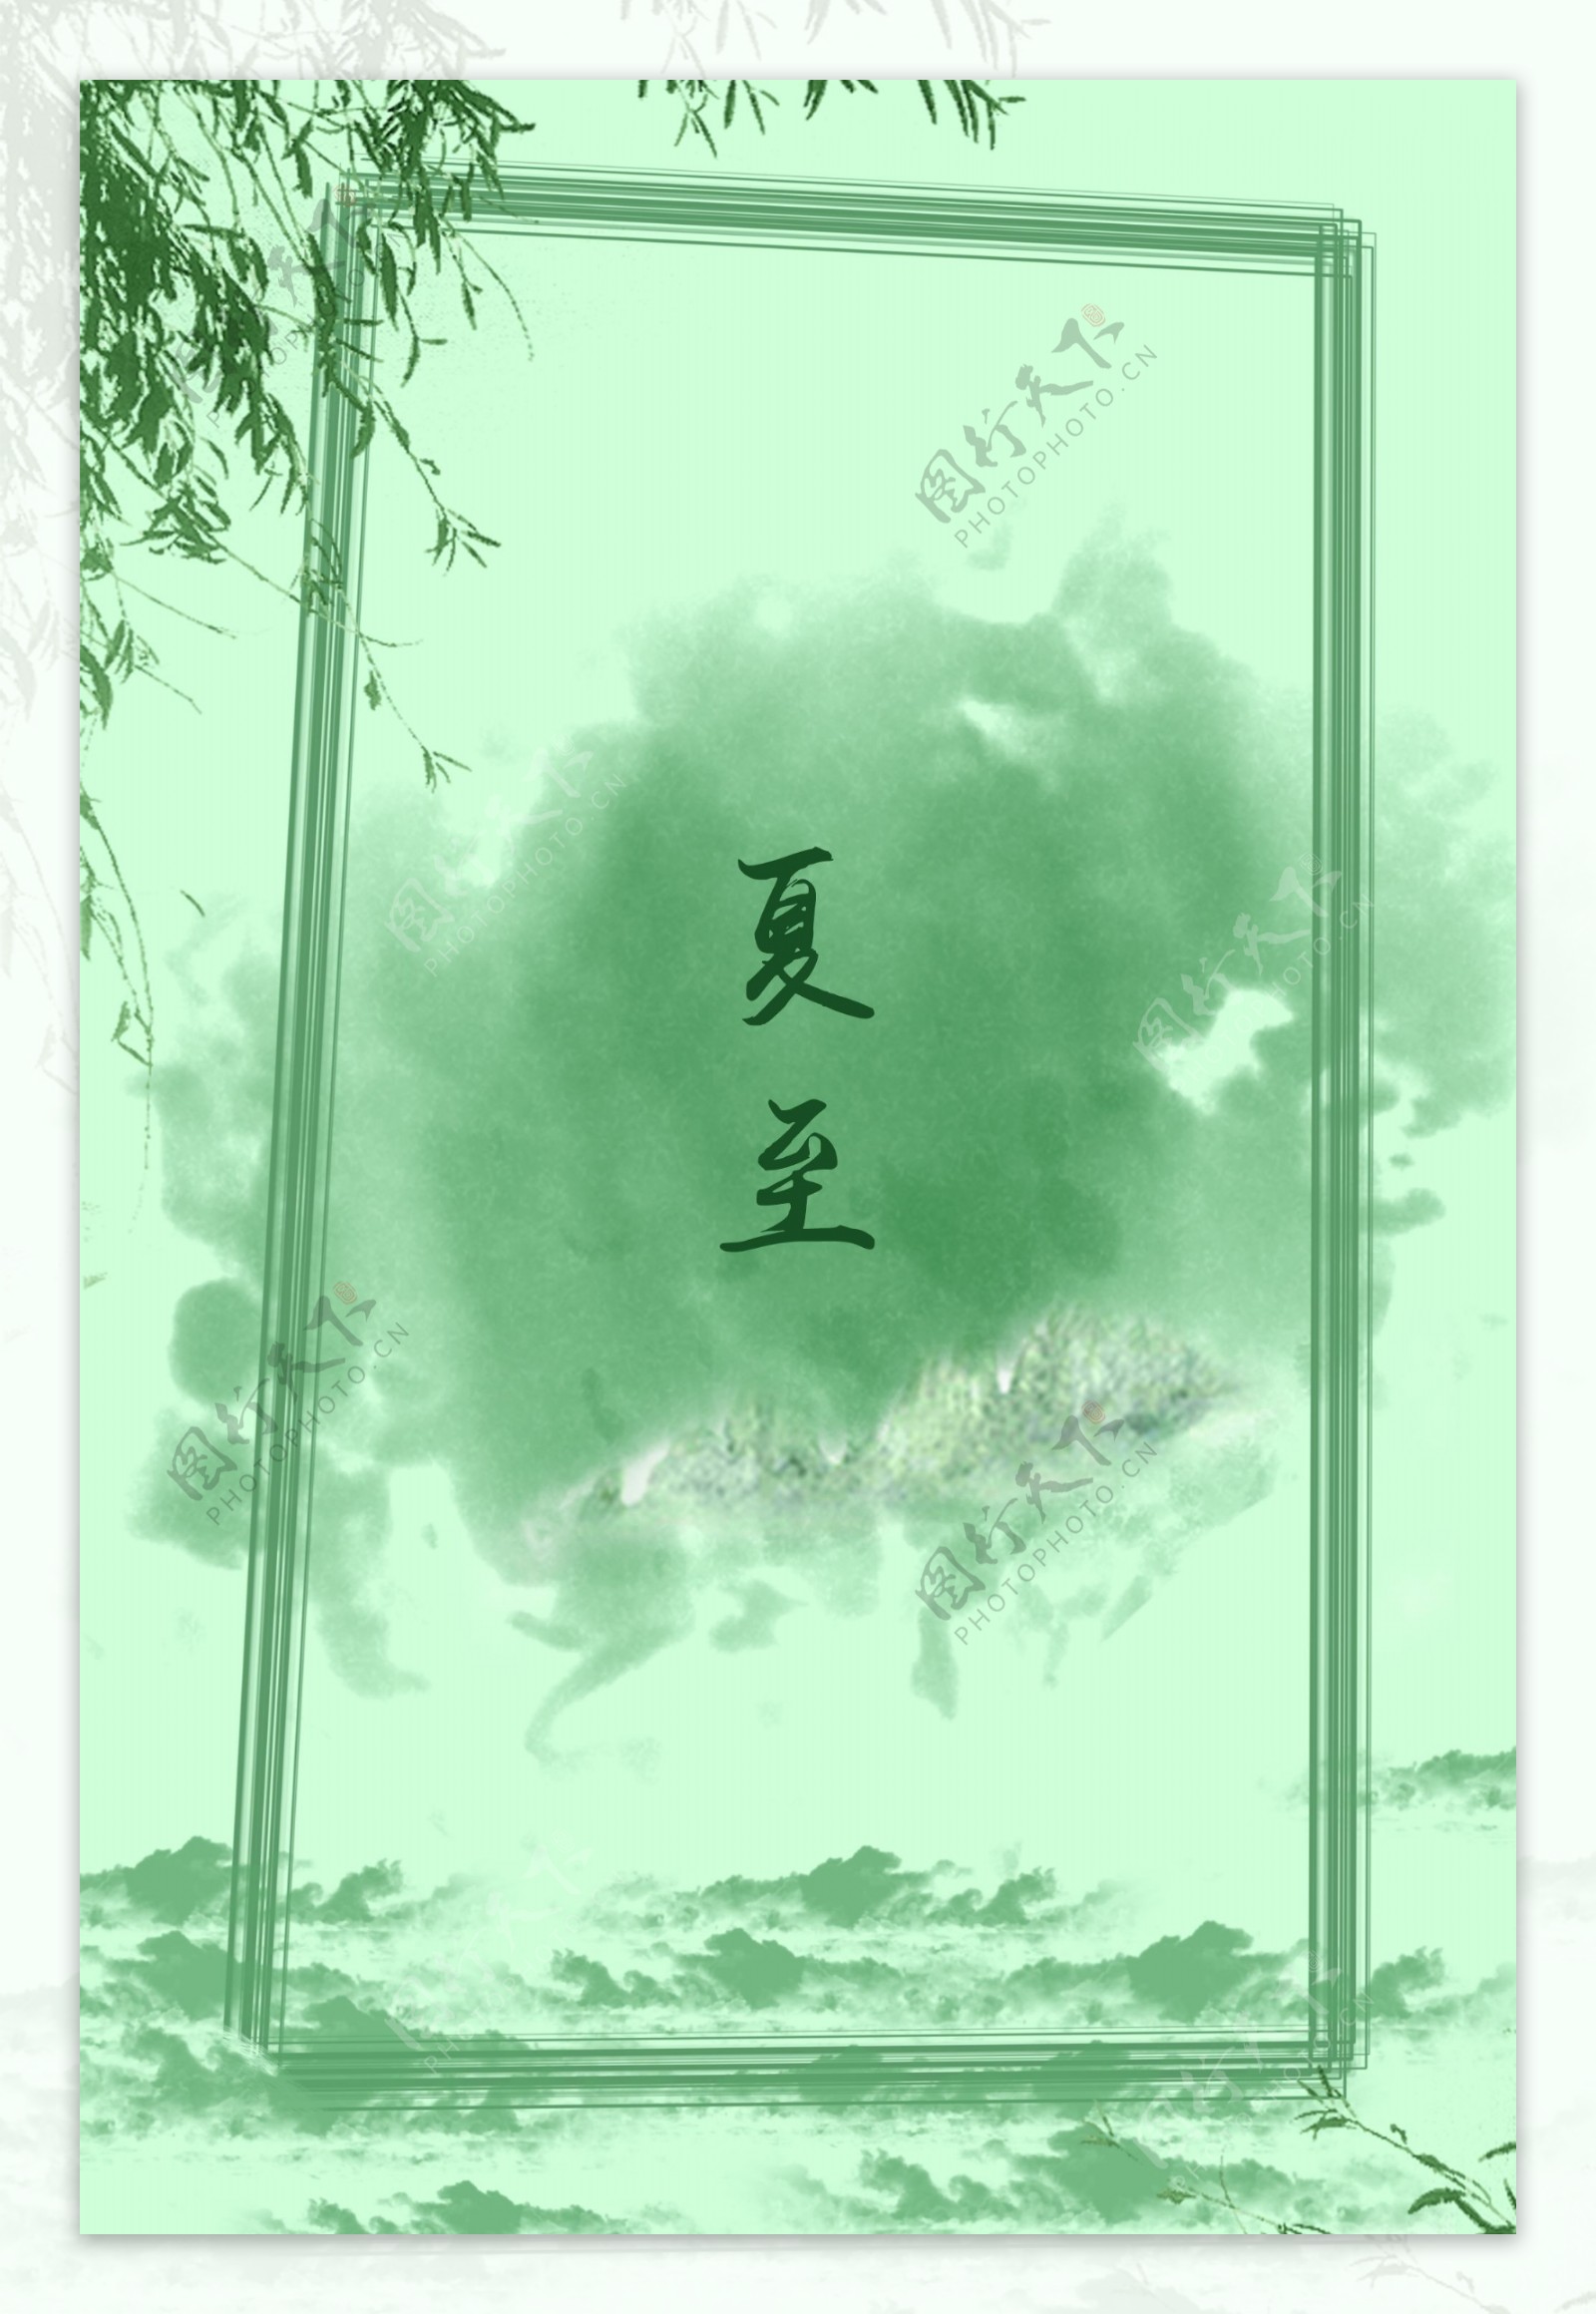 中国风水彩绿色边框夏至背景素材